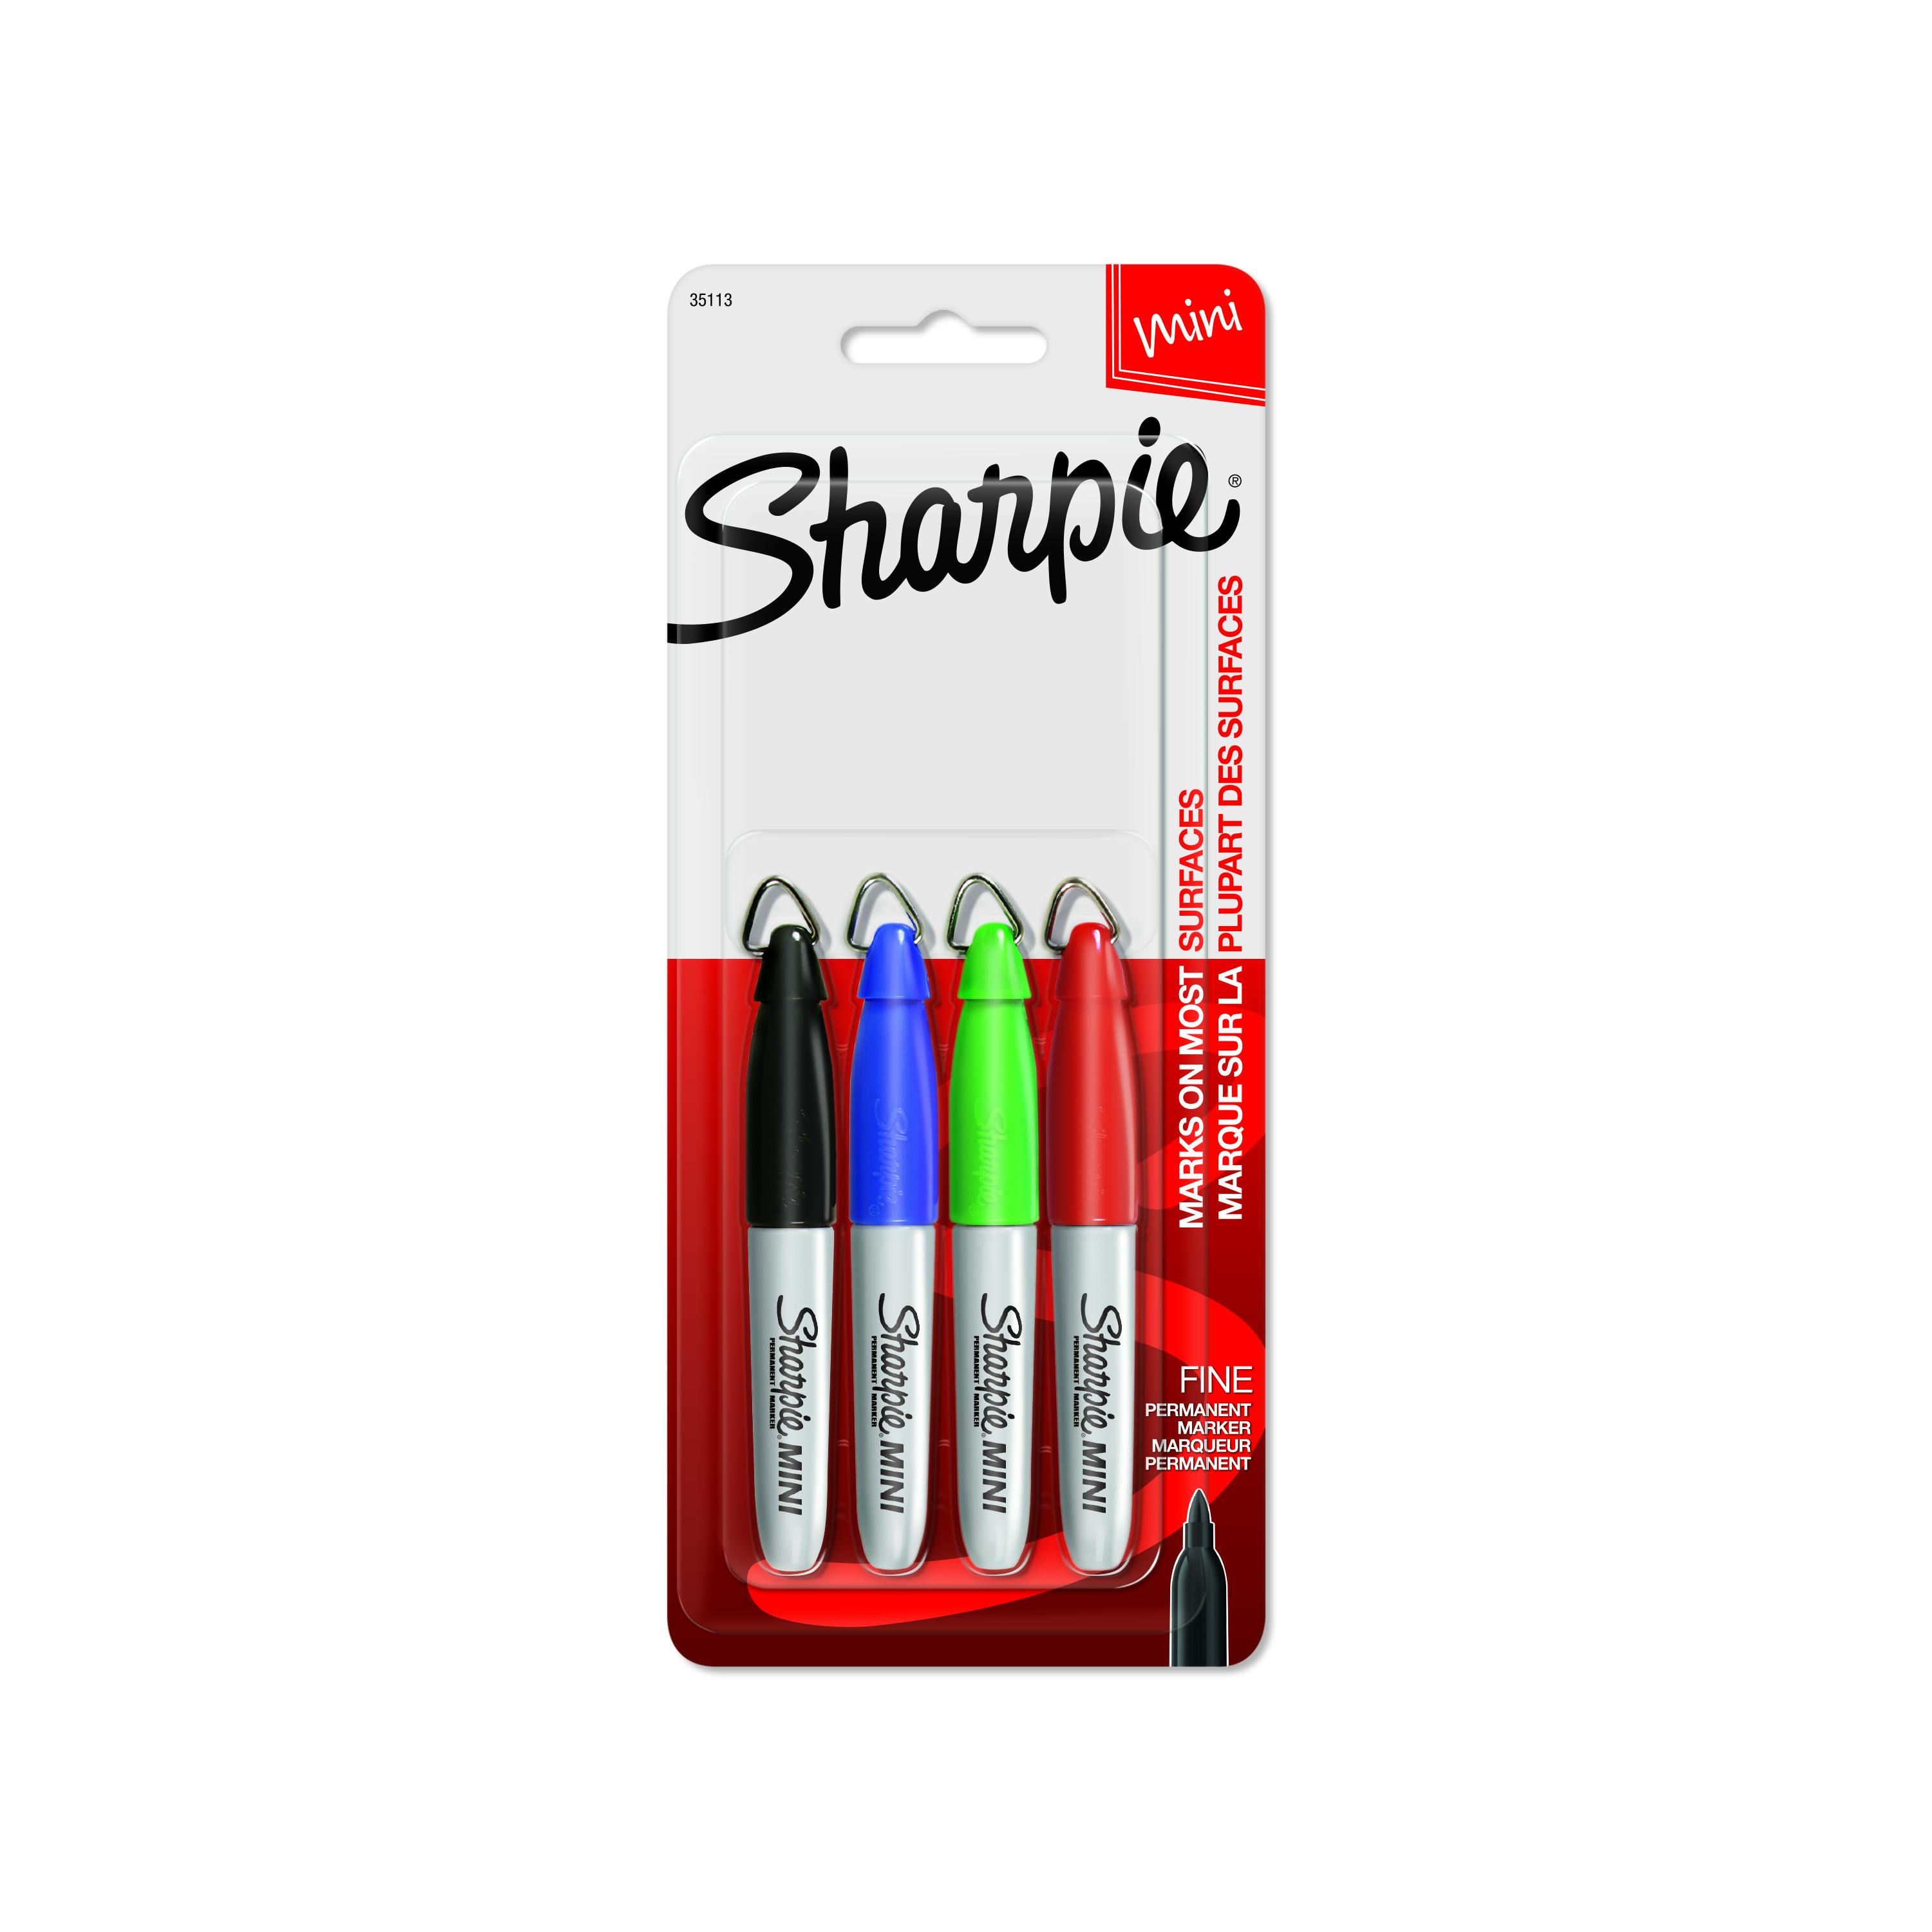 Sharpie Mini Permanent Marker, Fine Point | Sharpie